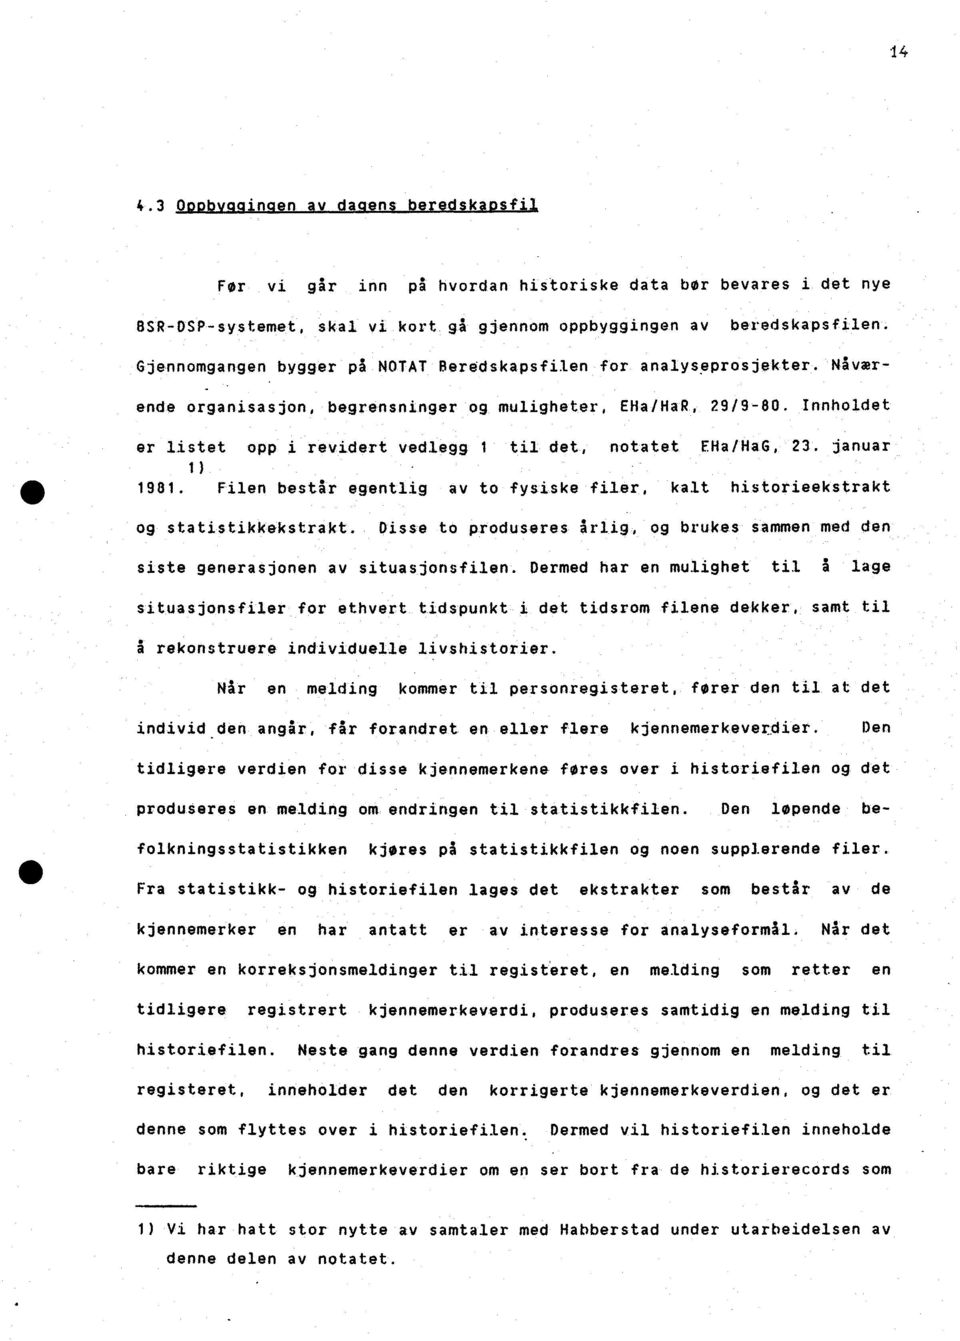 Innholdet er listet opp i revidert vedlegg 1 til det, notatet EHa/HaG, 23. januar 1) 1981. Filen består egentlig av to fysiske filer, kalt historieekstrakt og statistikkekstrakt.